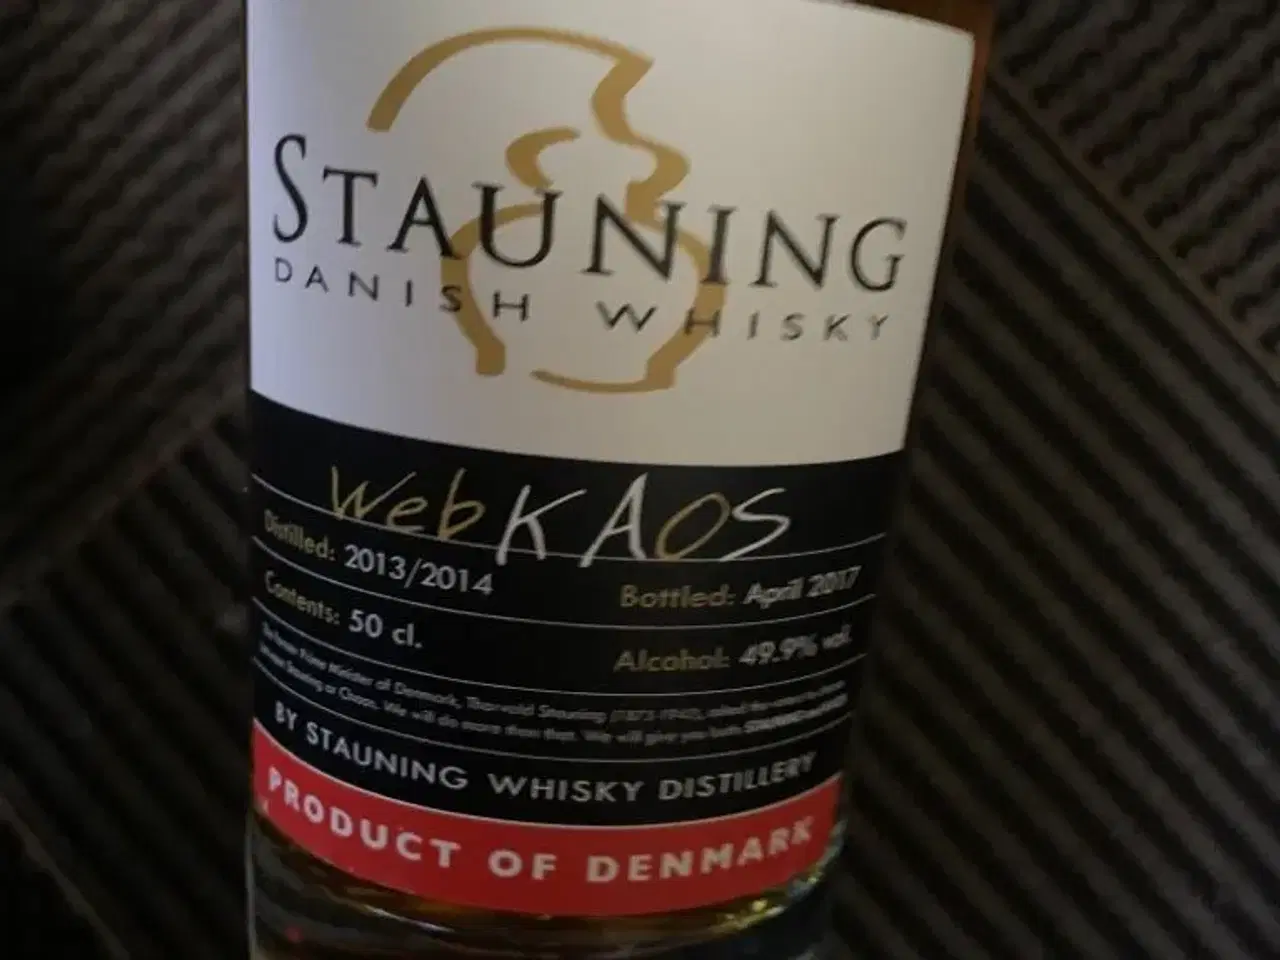 Billede 2 - Stauning whisky   webkaos